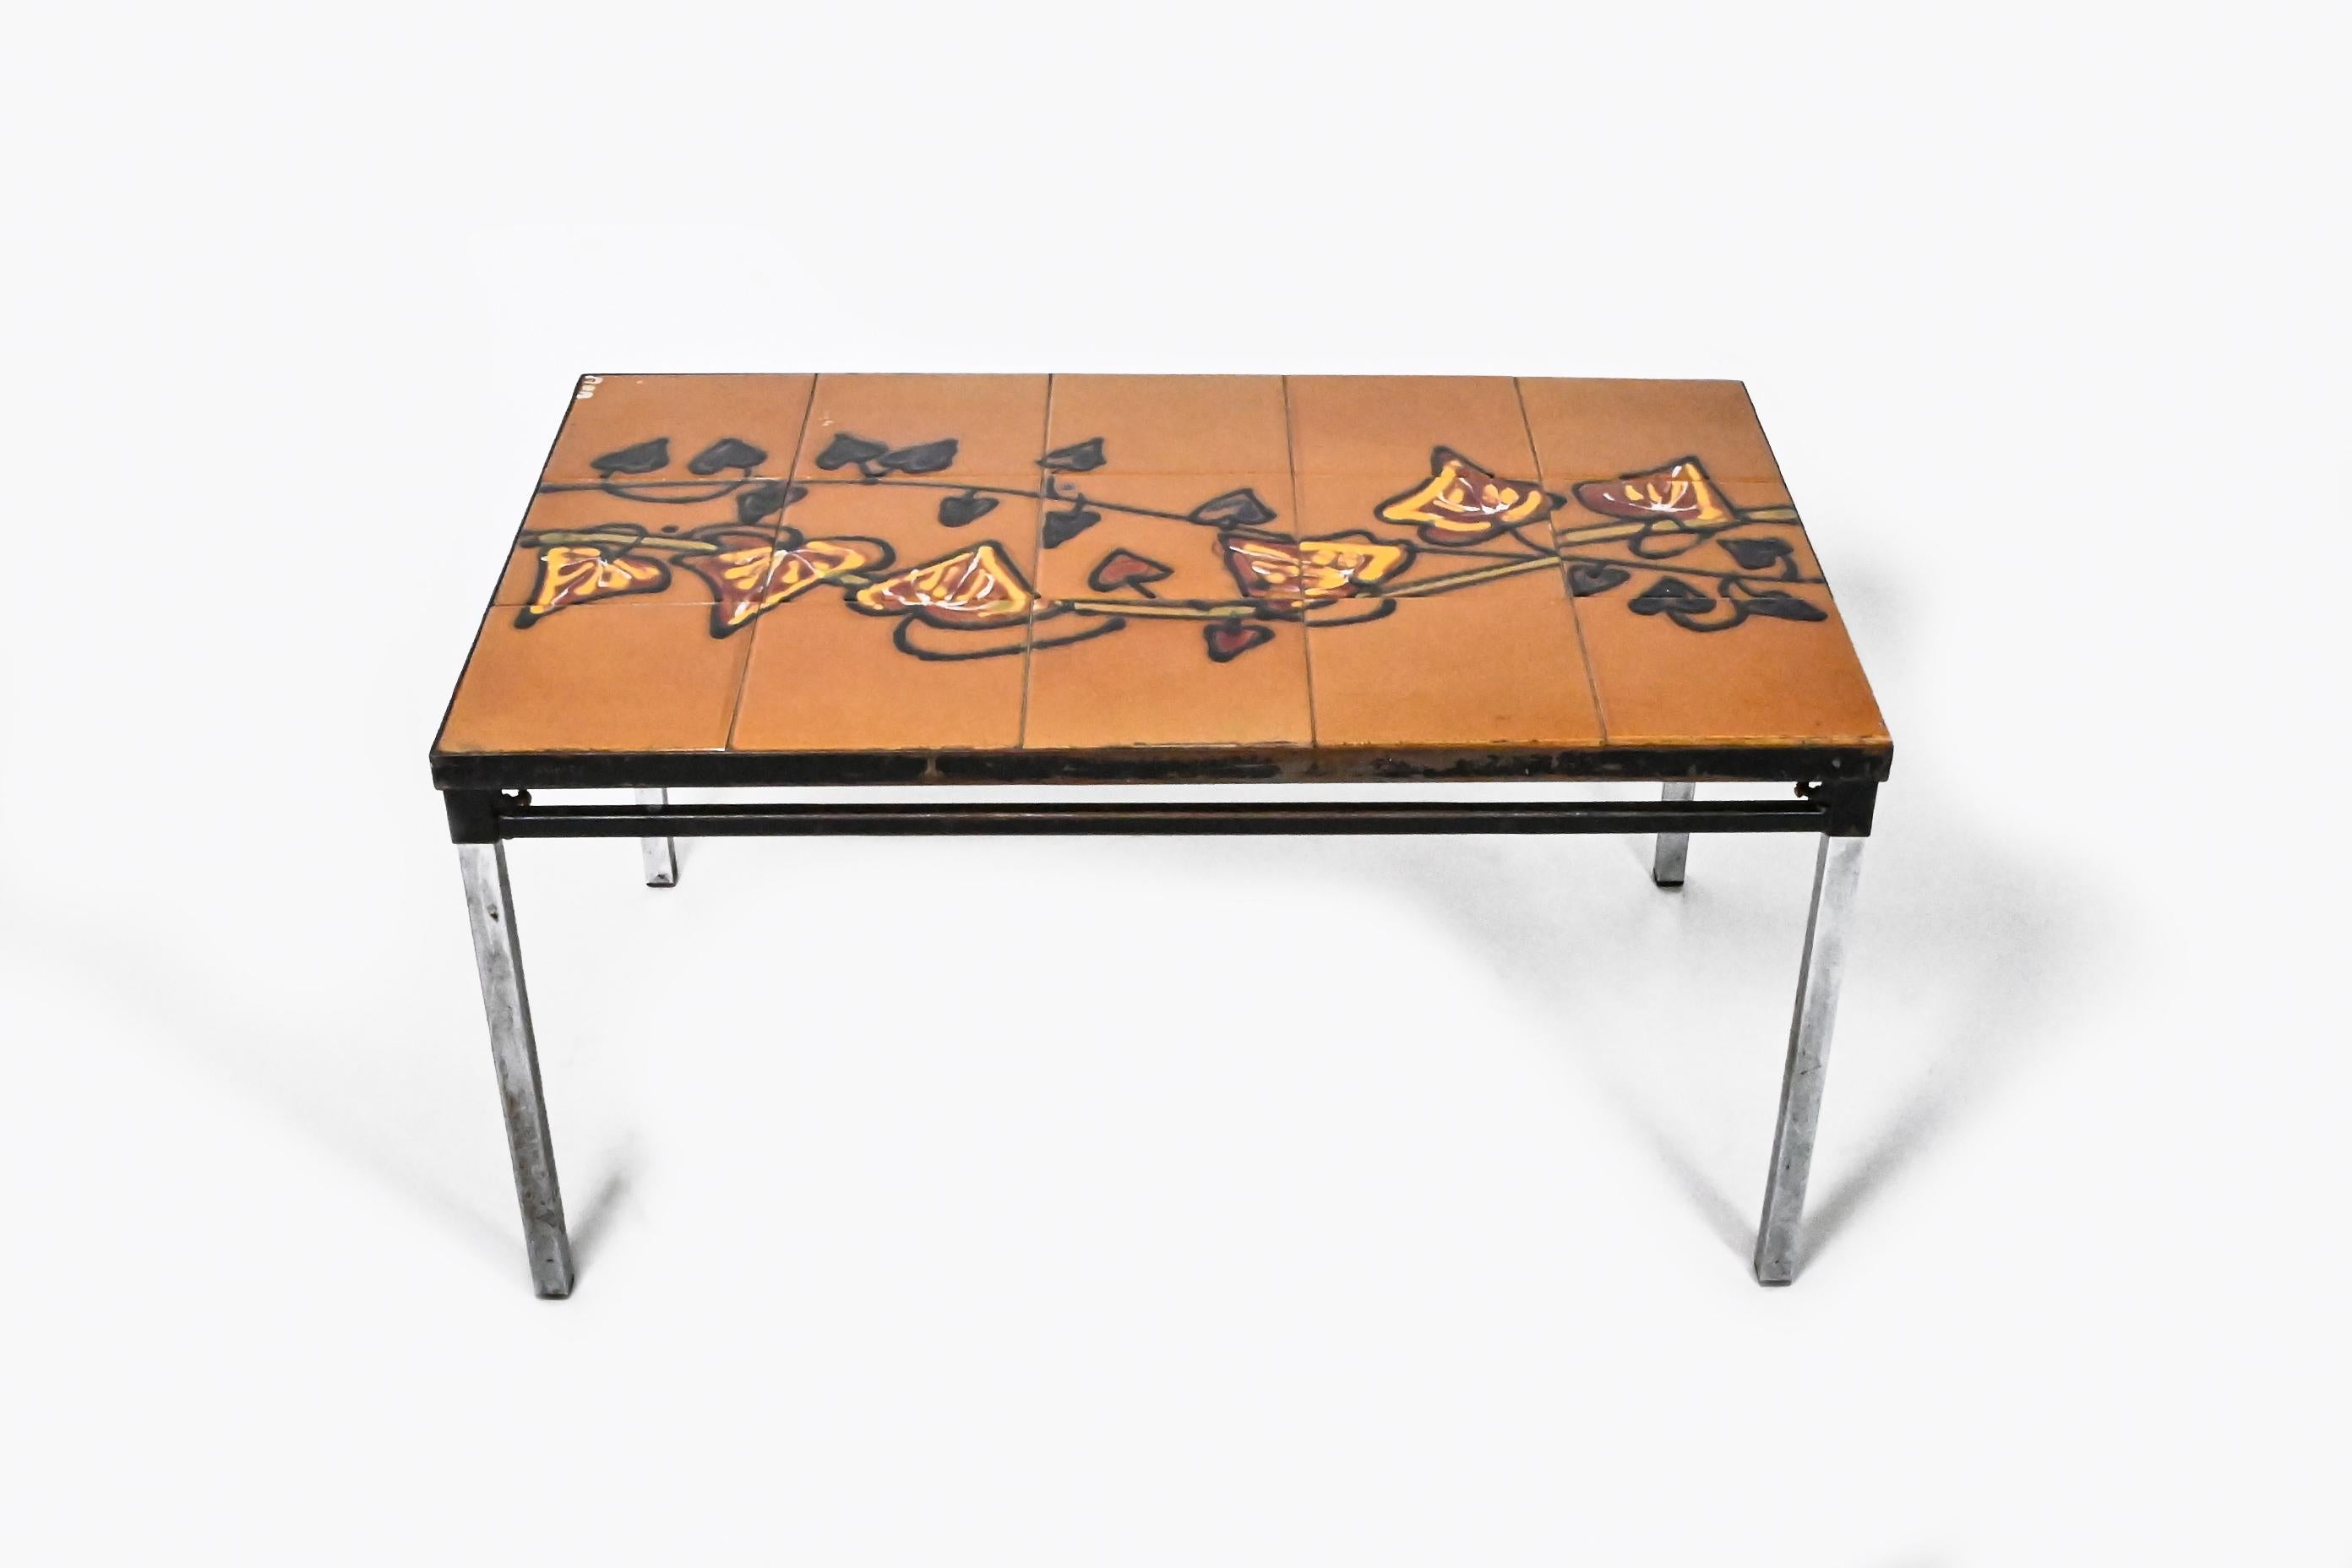 Une table basse en faïence du milieu du siècle par ADRI Belgique est mise en vente. Il s'agit d'une pièce emblématique bien connue de la production belge de design des années 1960.